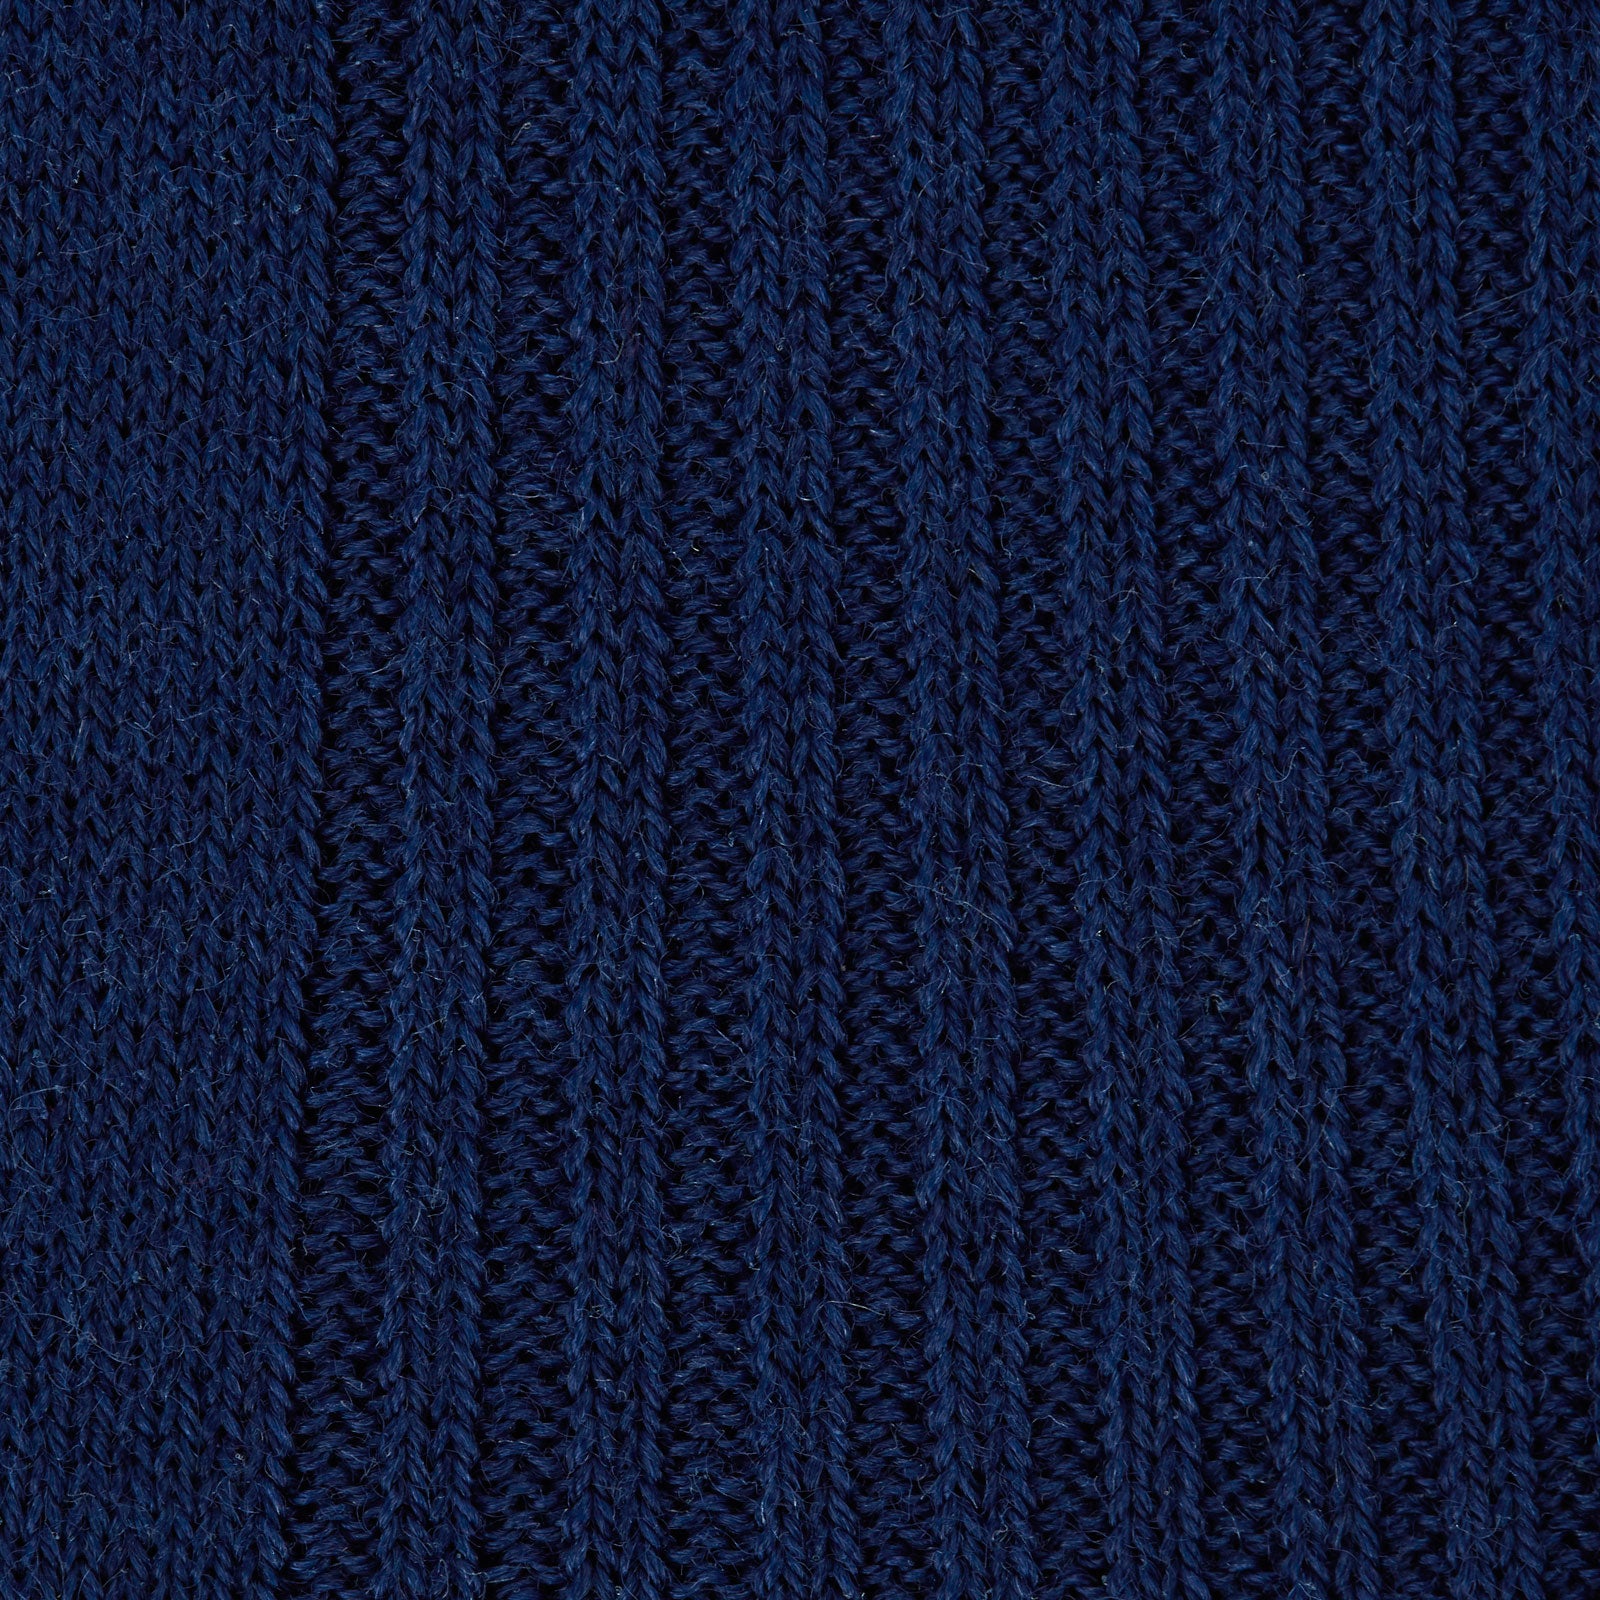 Midnight Blue Long Merino Wool Socks